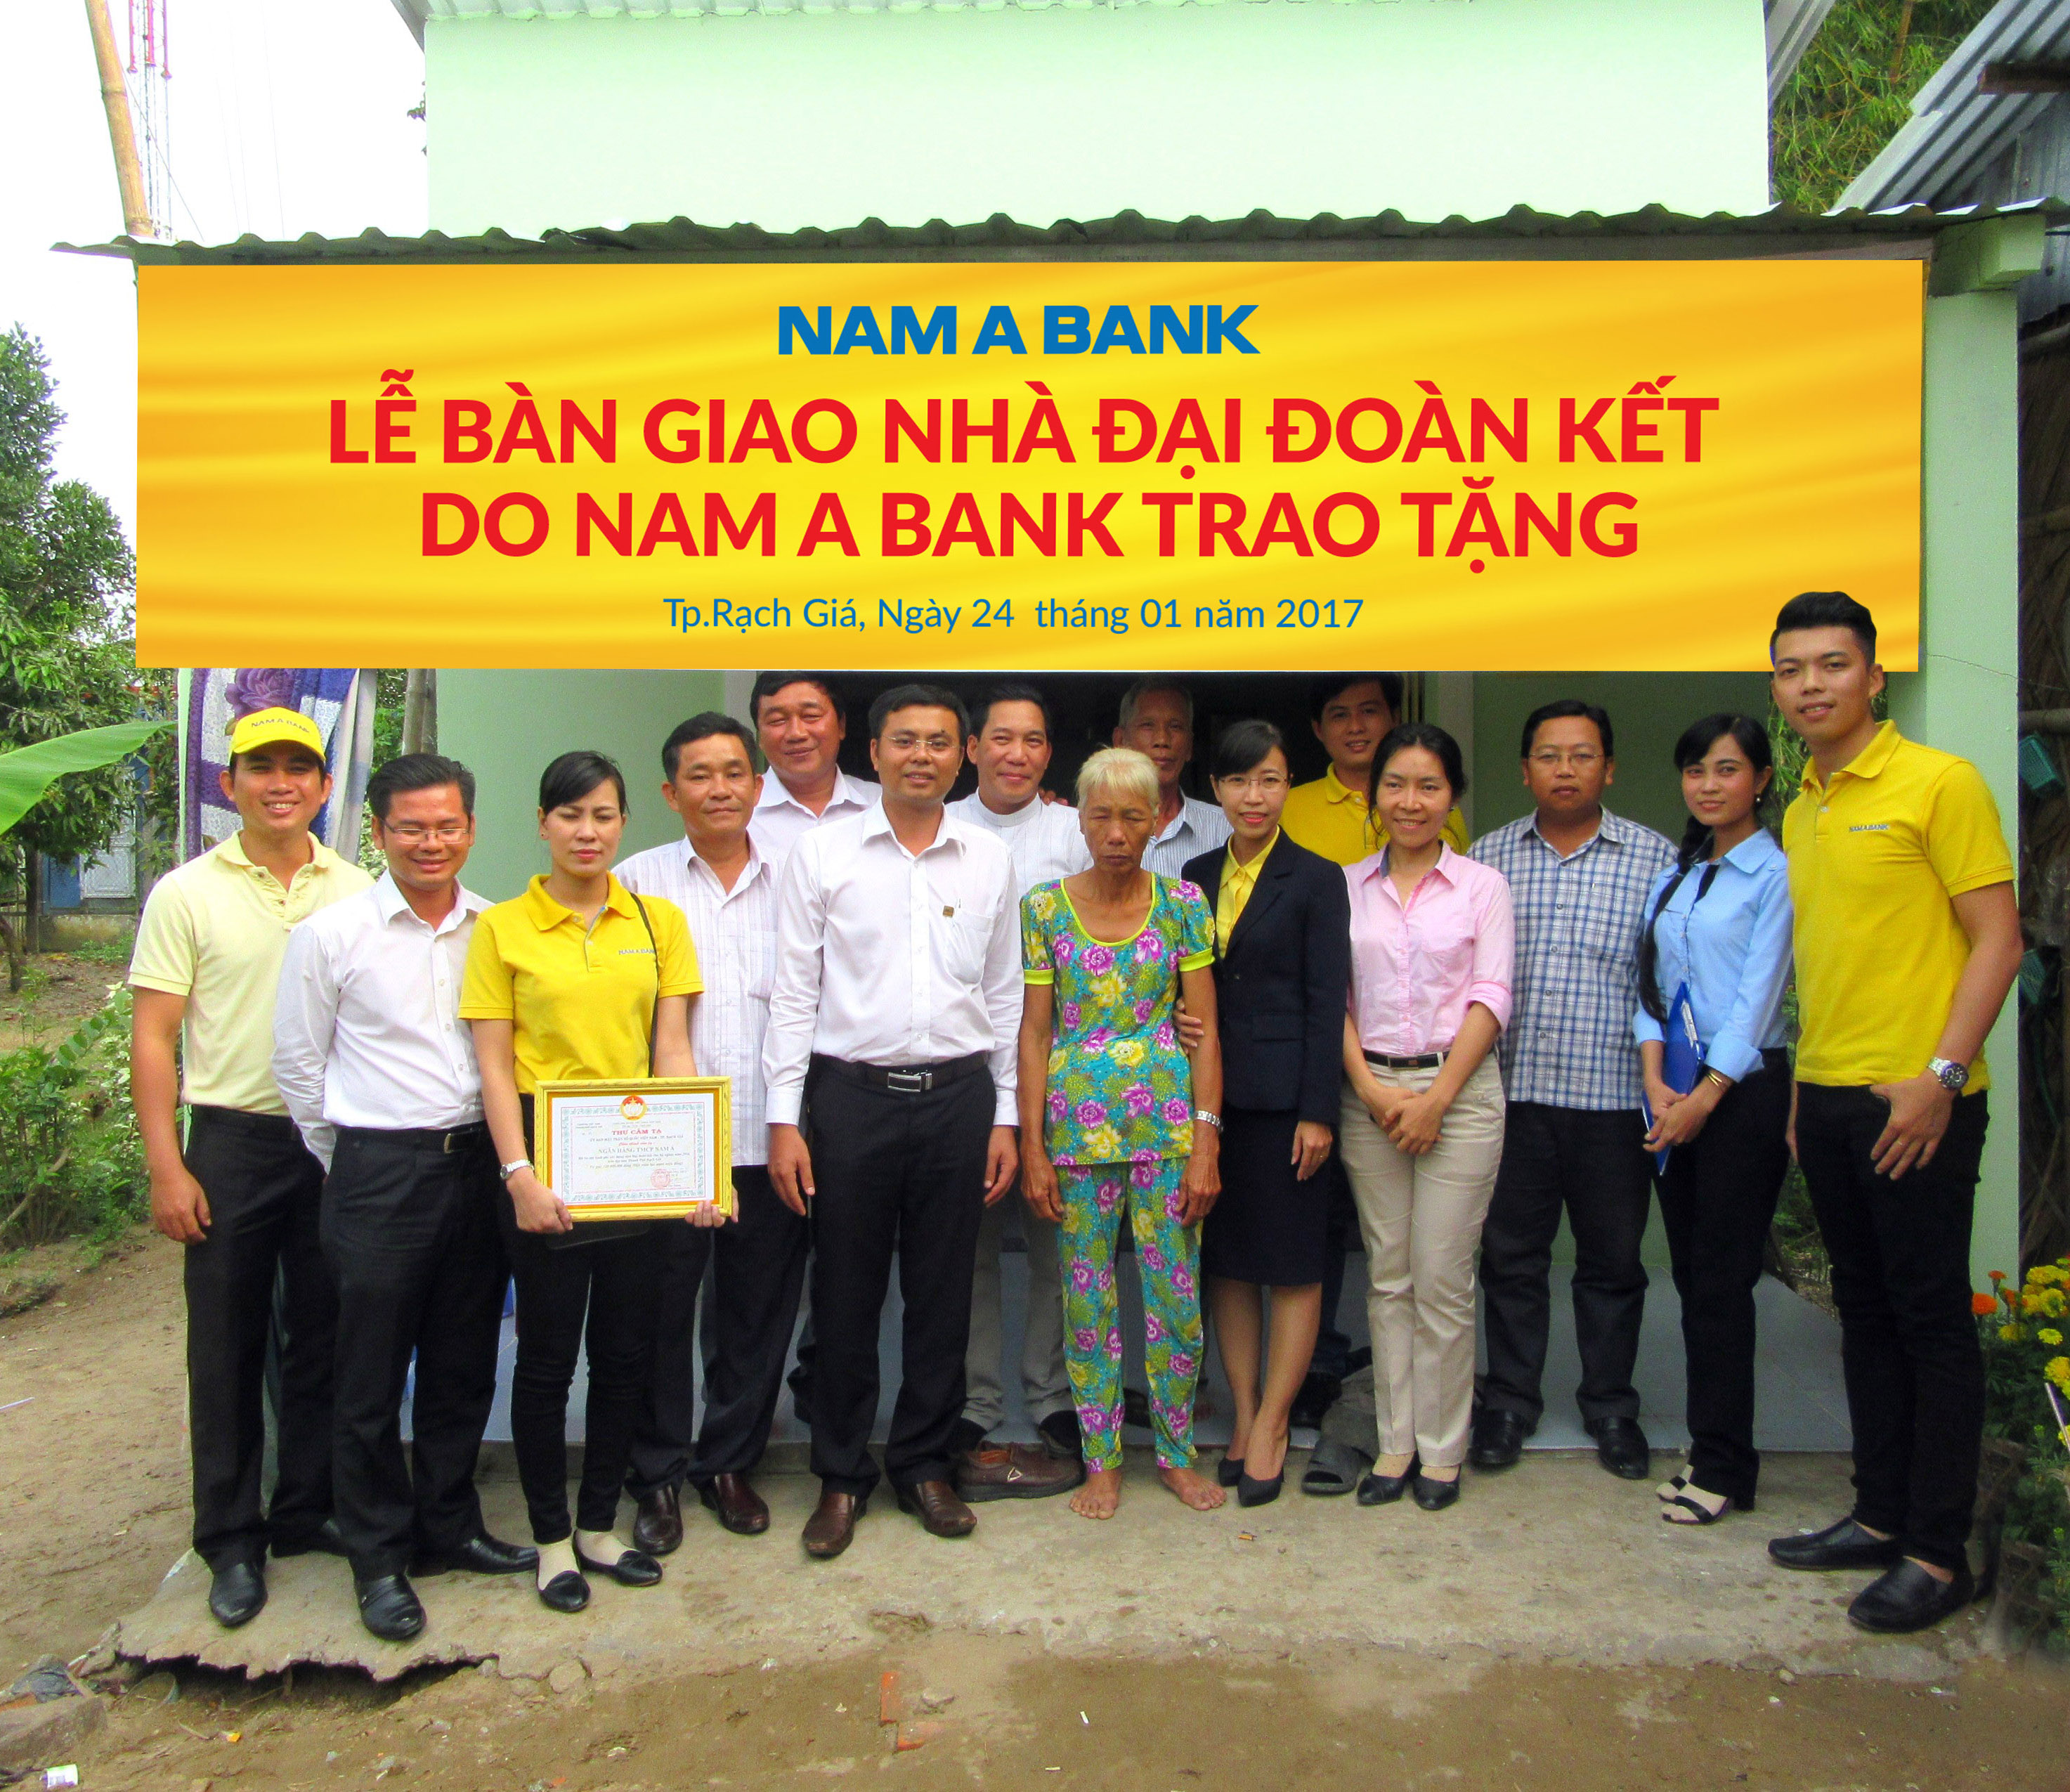 NamABank trao tặng nhà Đại đoàn kết cho các hộ nghèo ở Kiên Giang